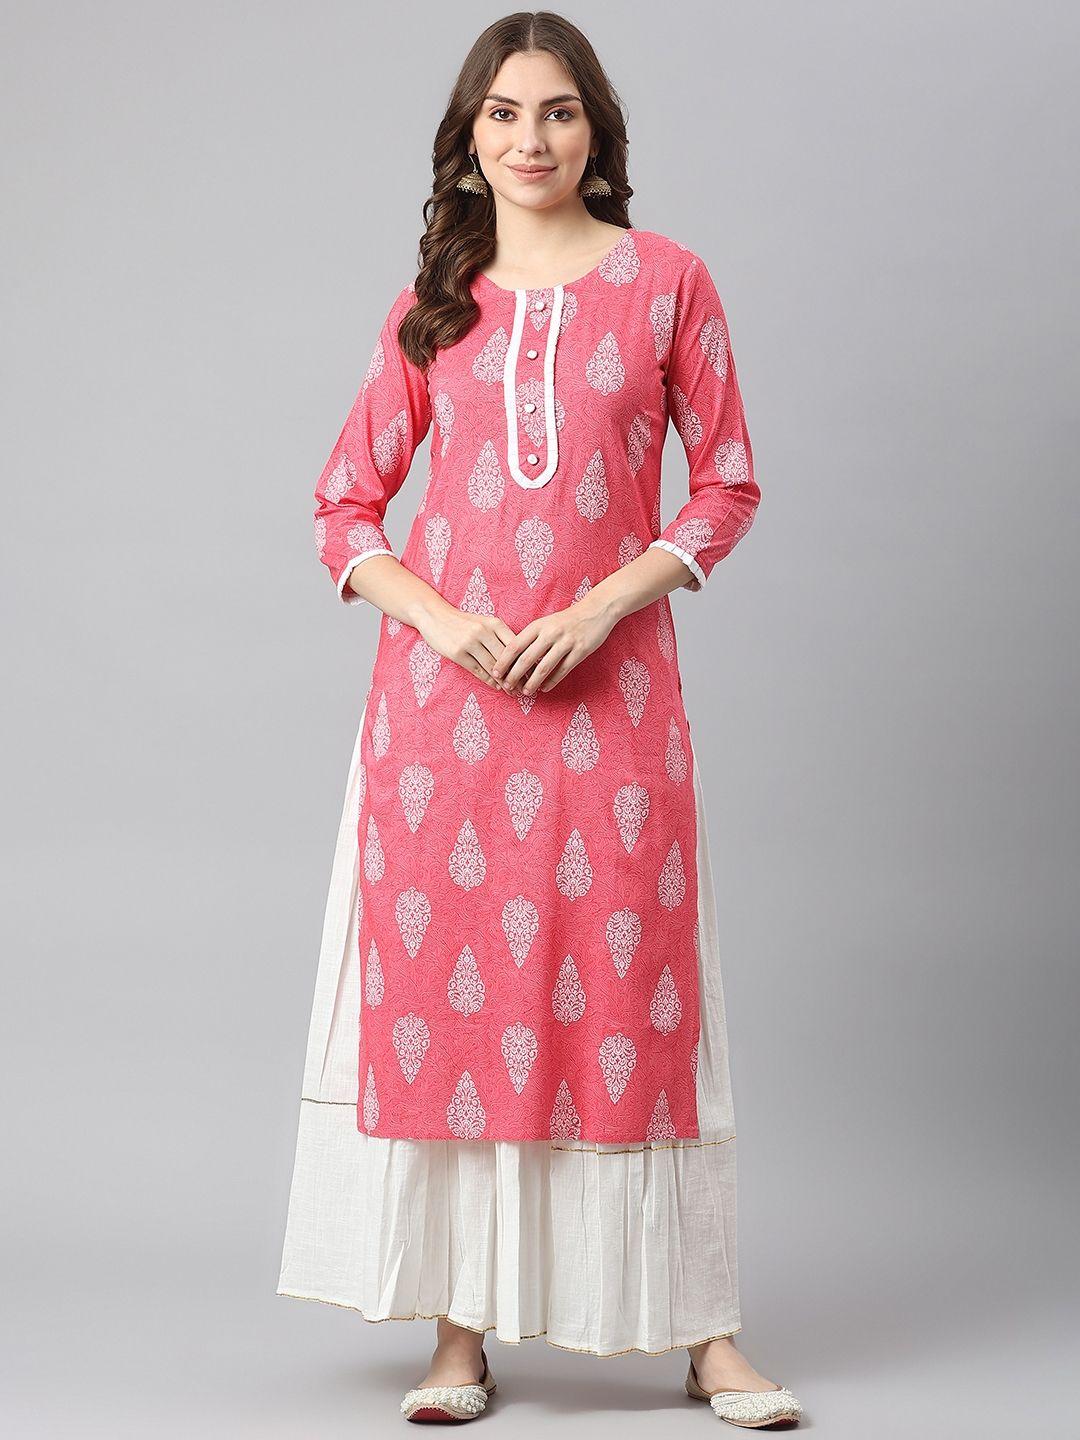 kalini-women-pink-ethnic-motifs-printed-kurta-with-skirt